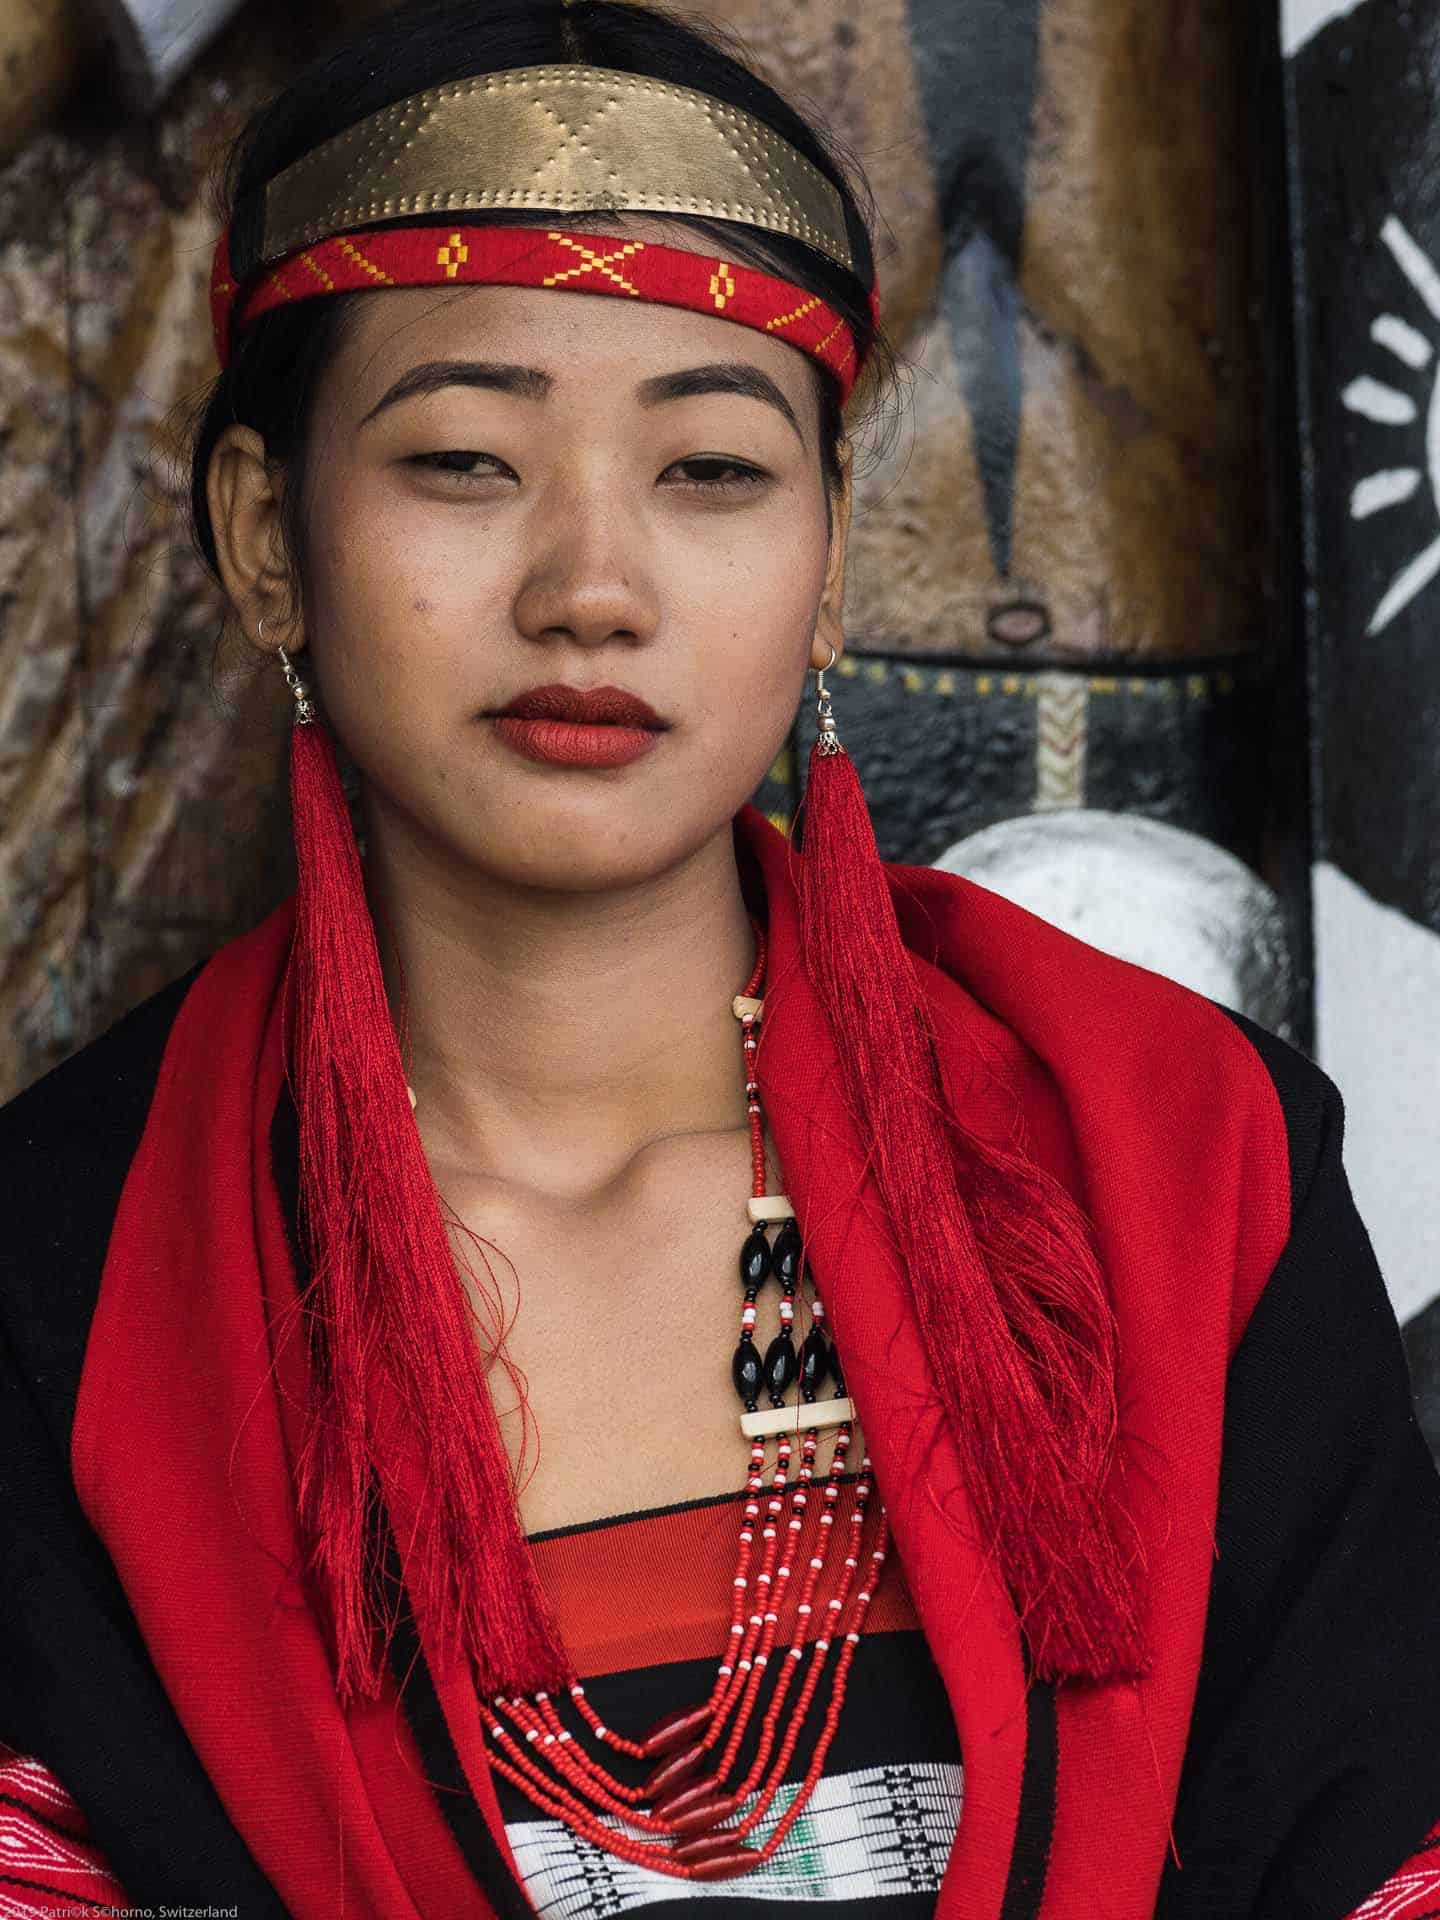 Bamboo Retreat Hotel - image "Nagaland - Reisebericht von Teeplantagen und dem Hornbill Festival - Informationen für die Indien Reise" 313